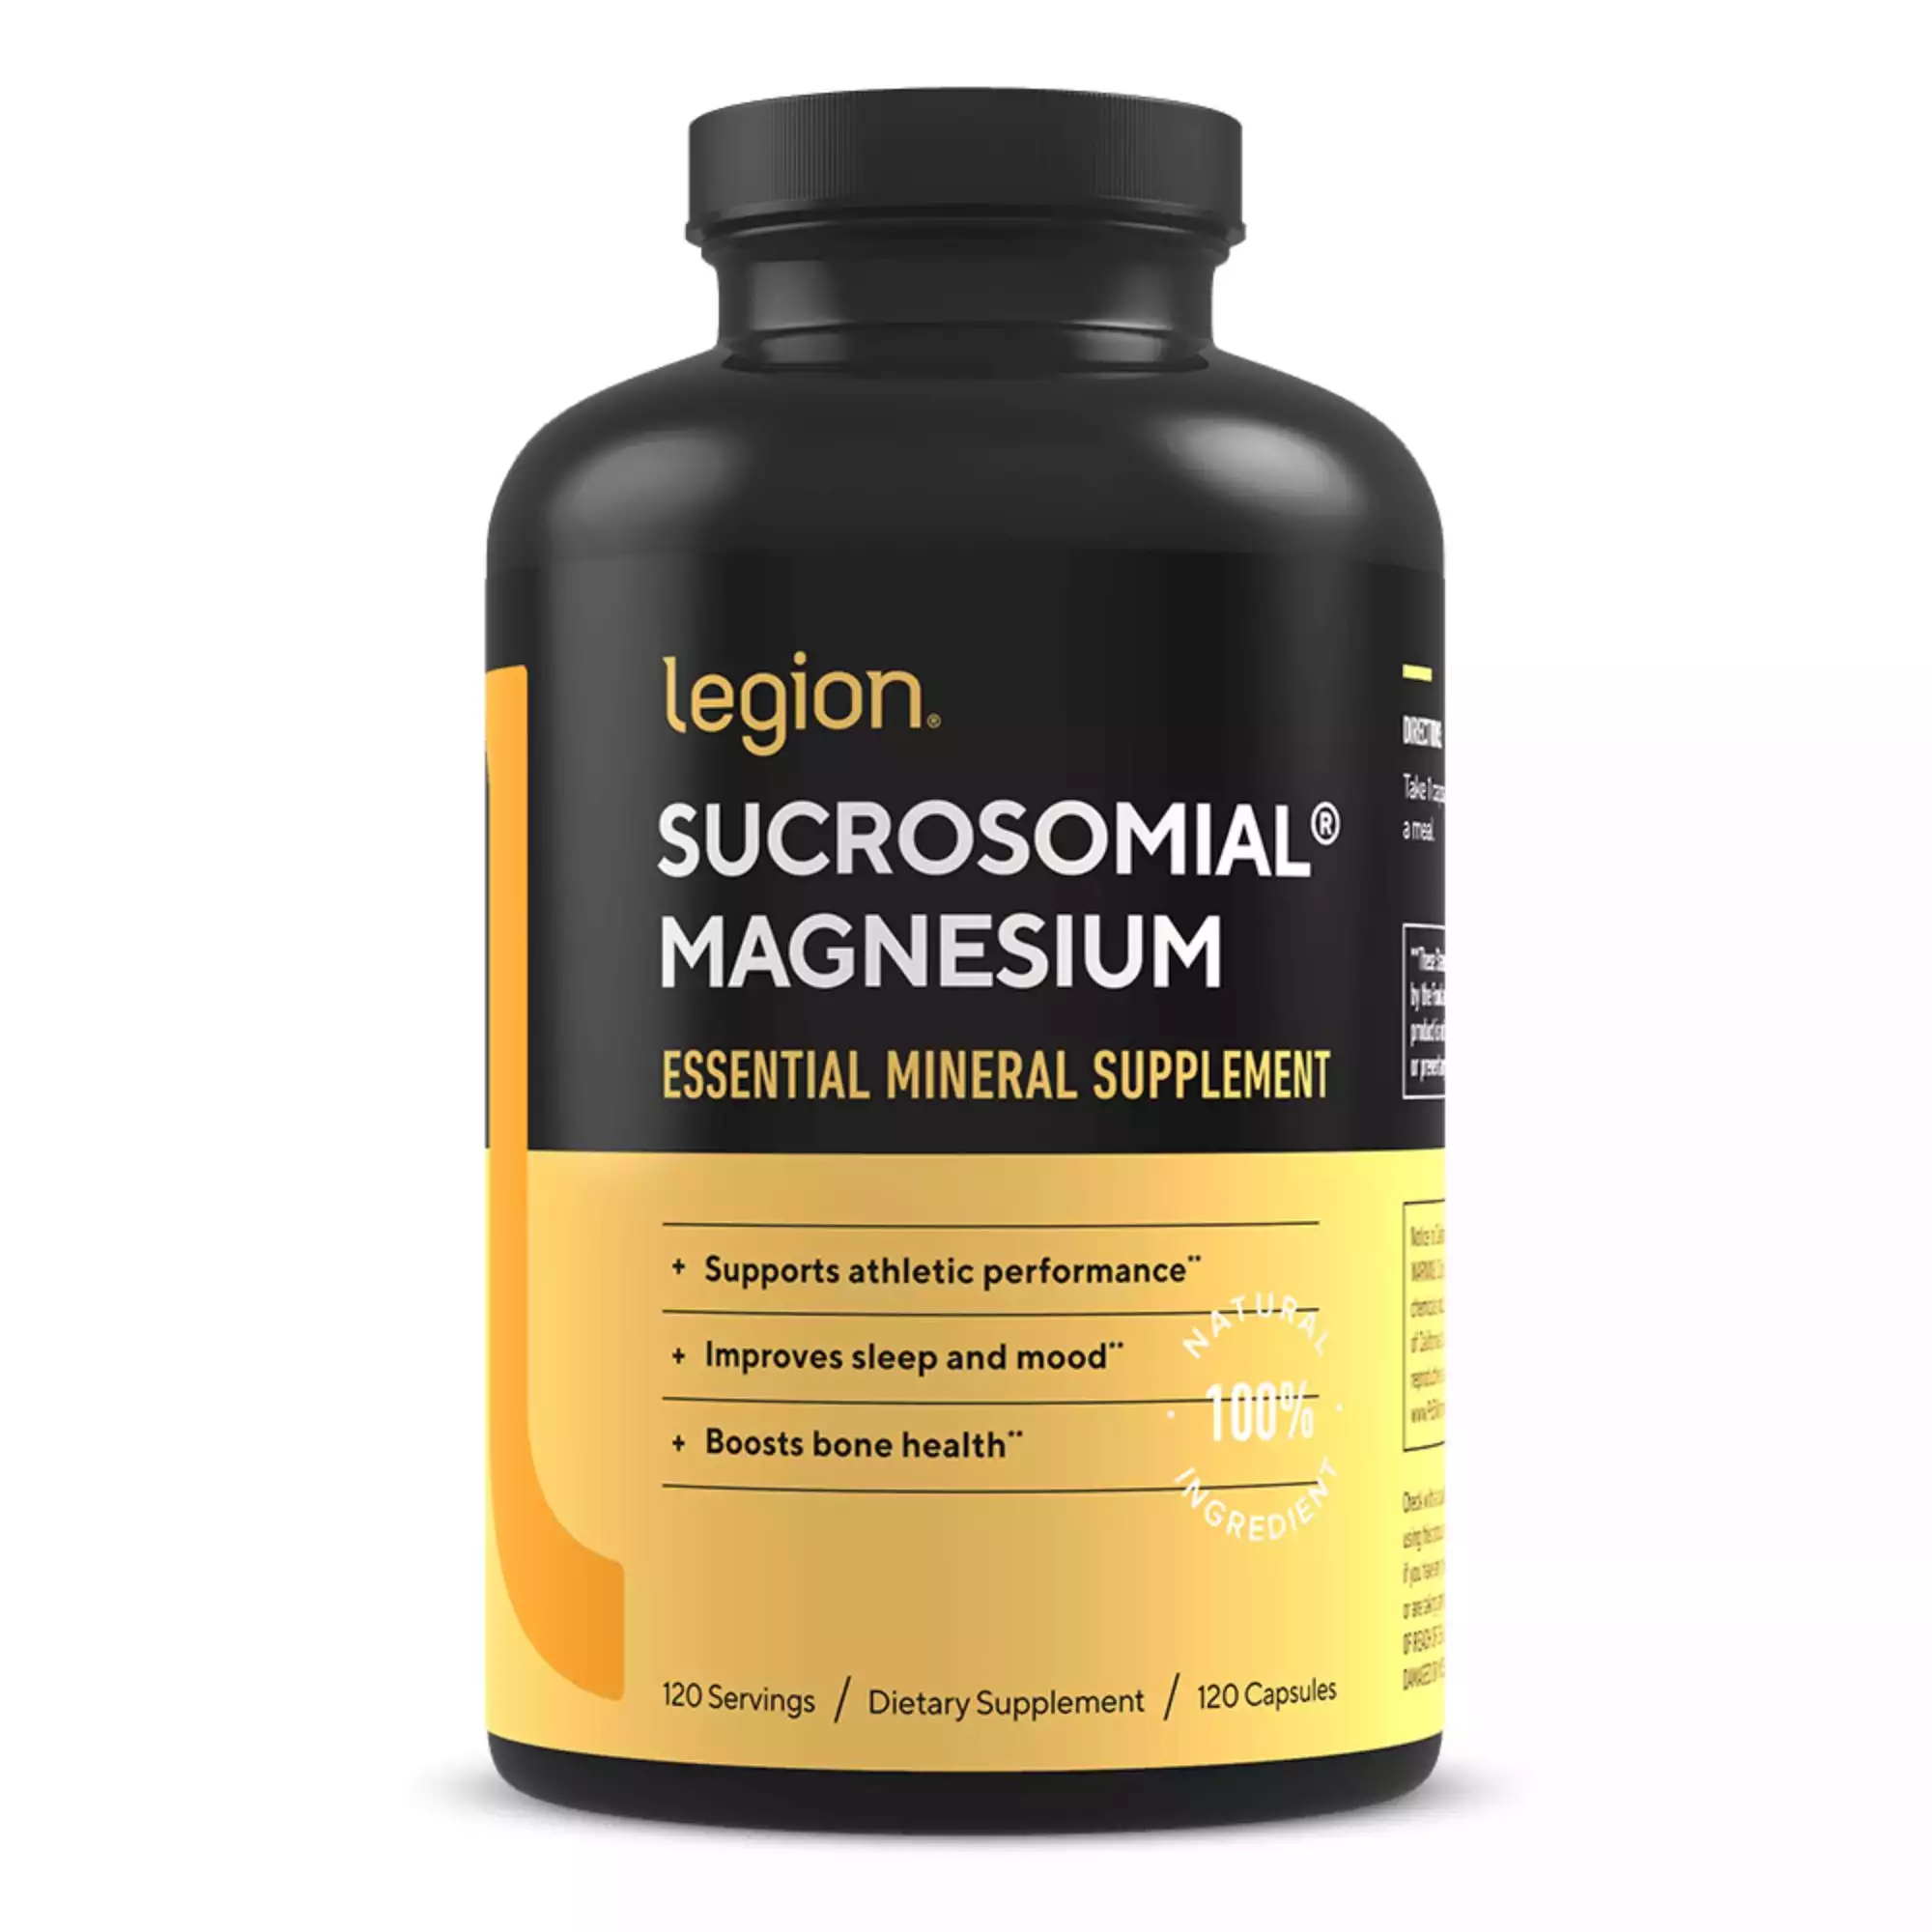 Legion Sucrosomial Magnesium